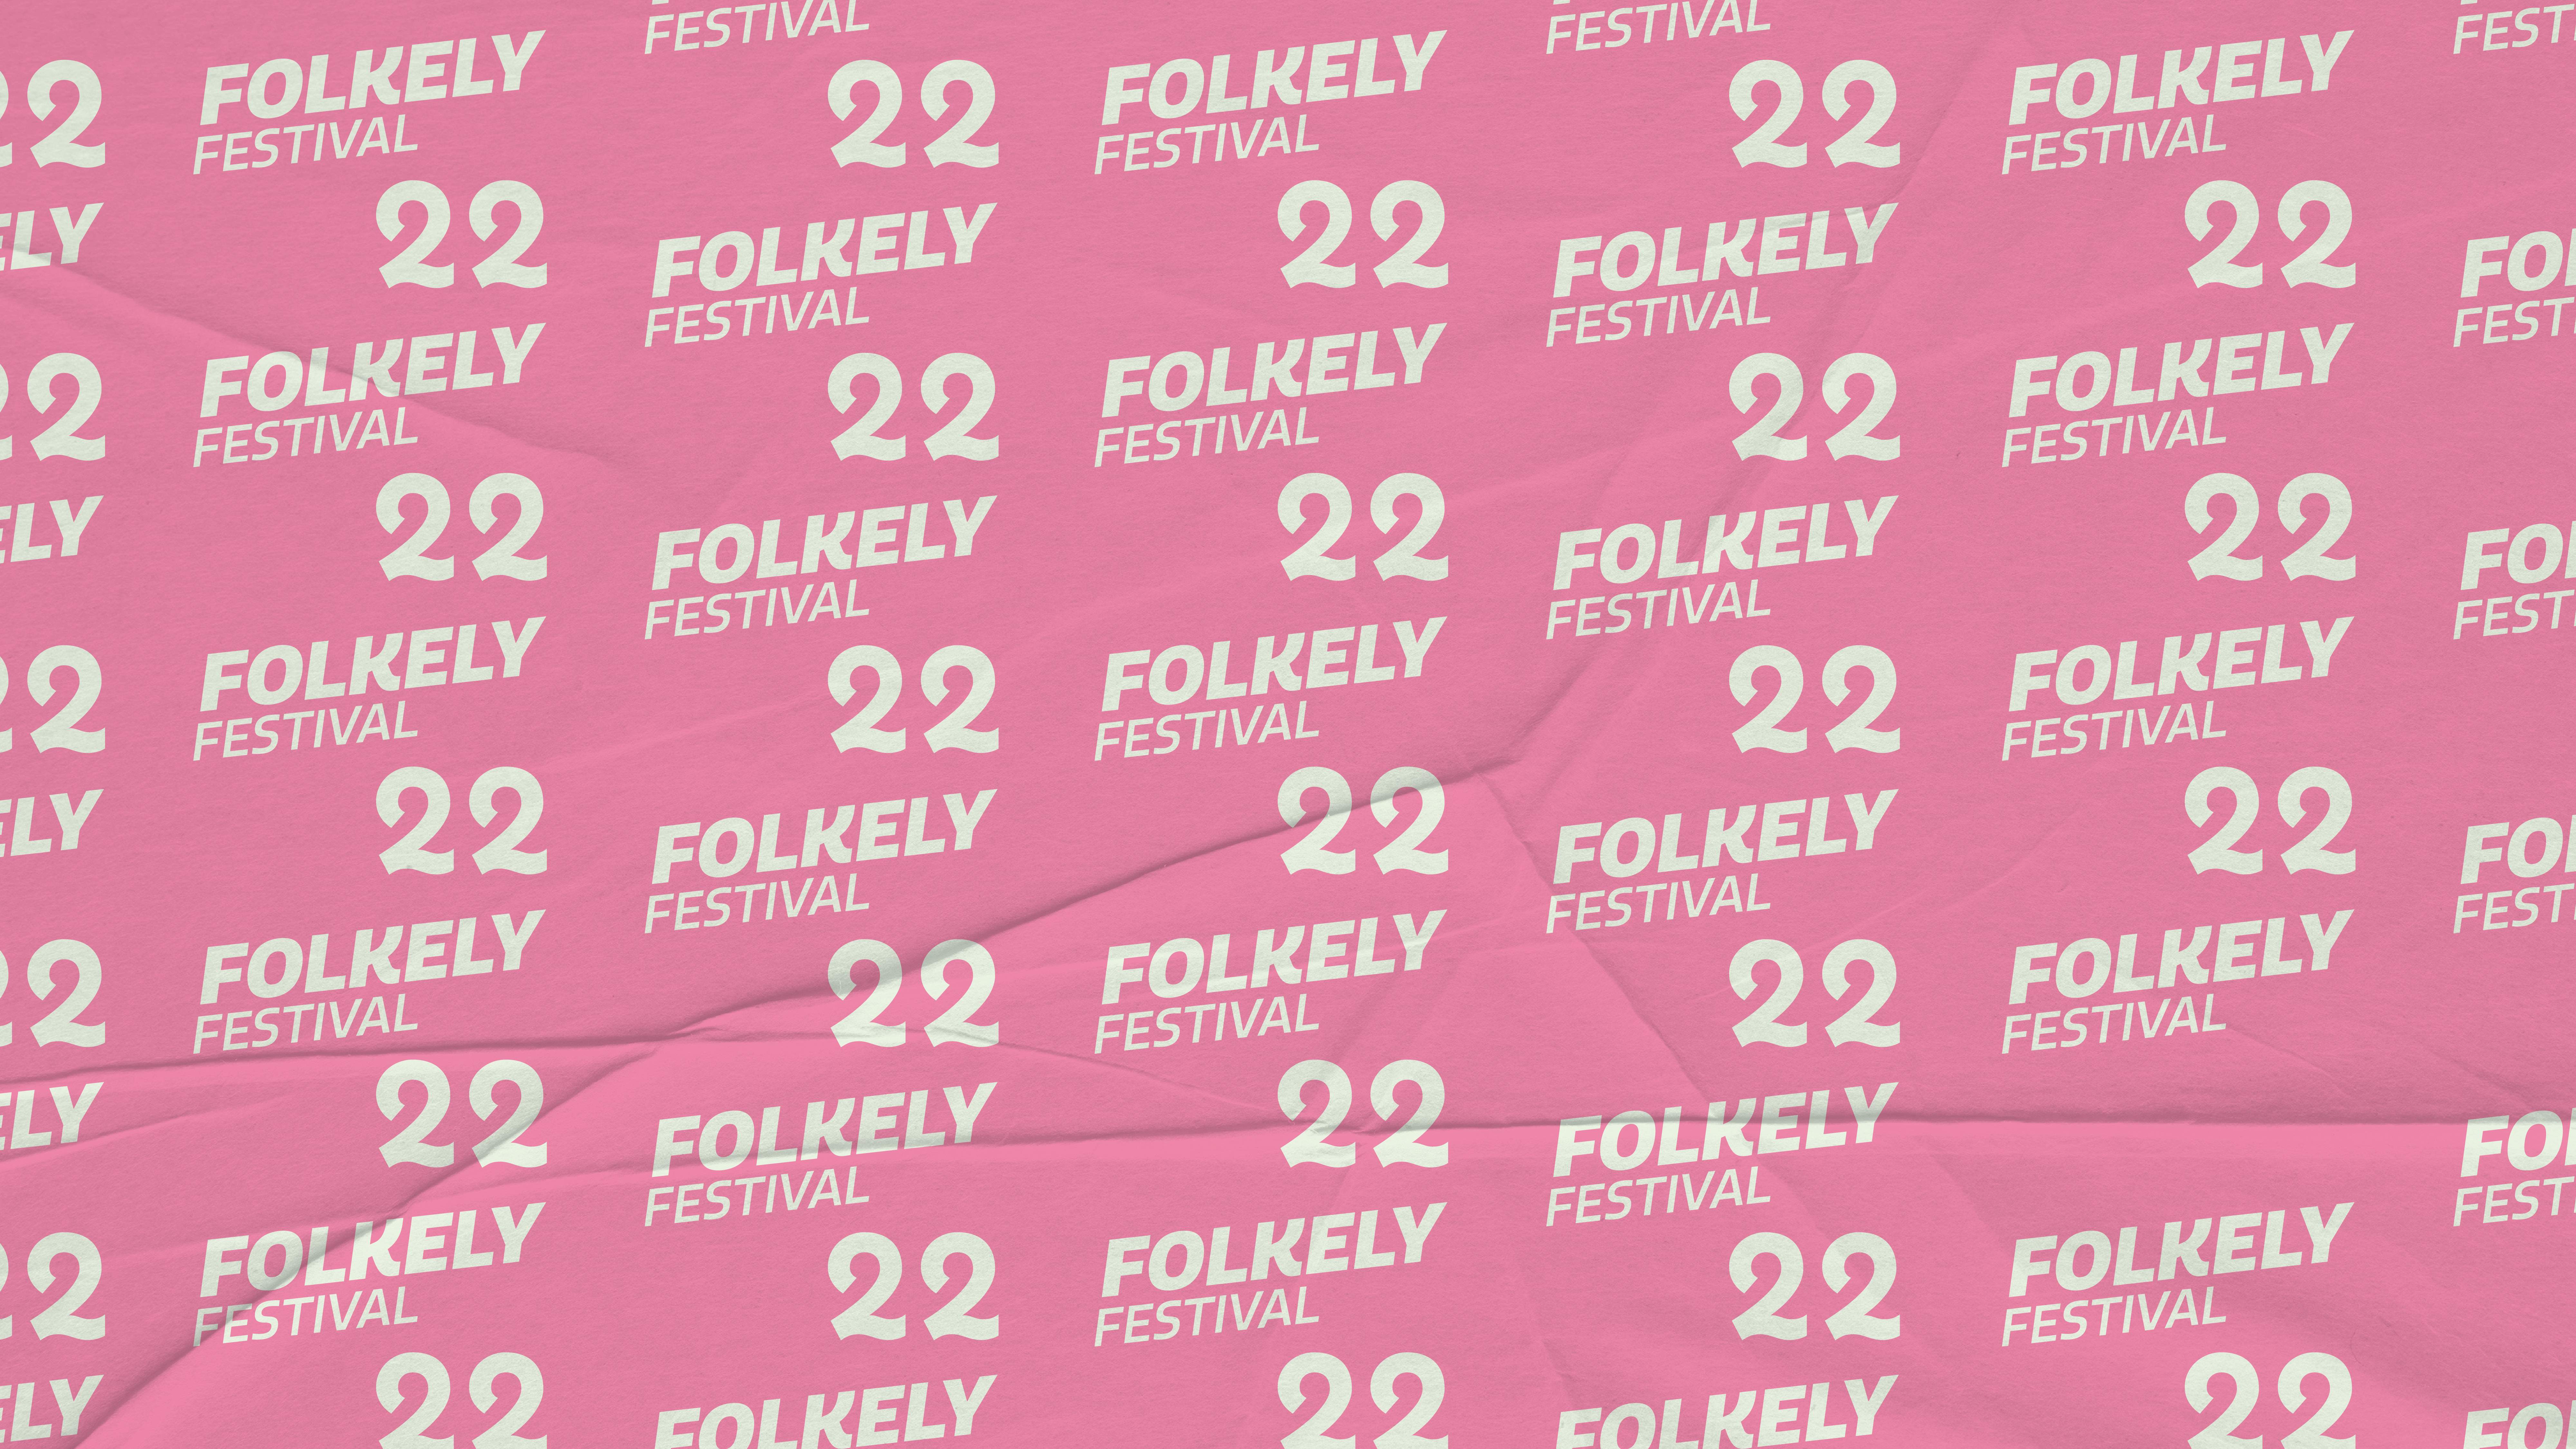 Folkely festival 22